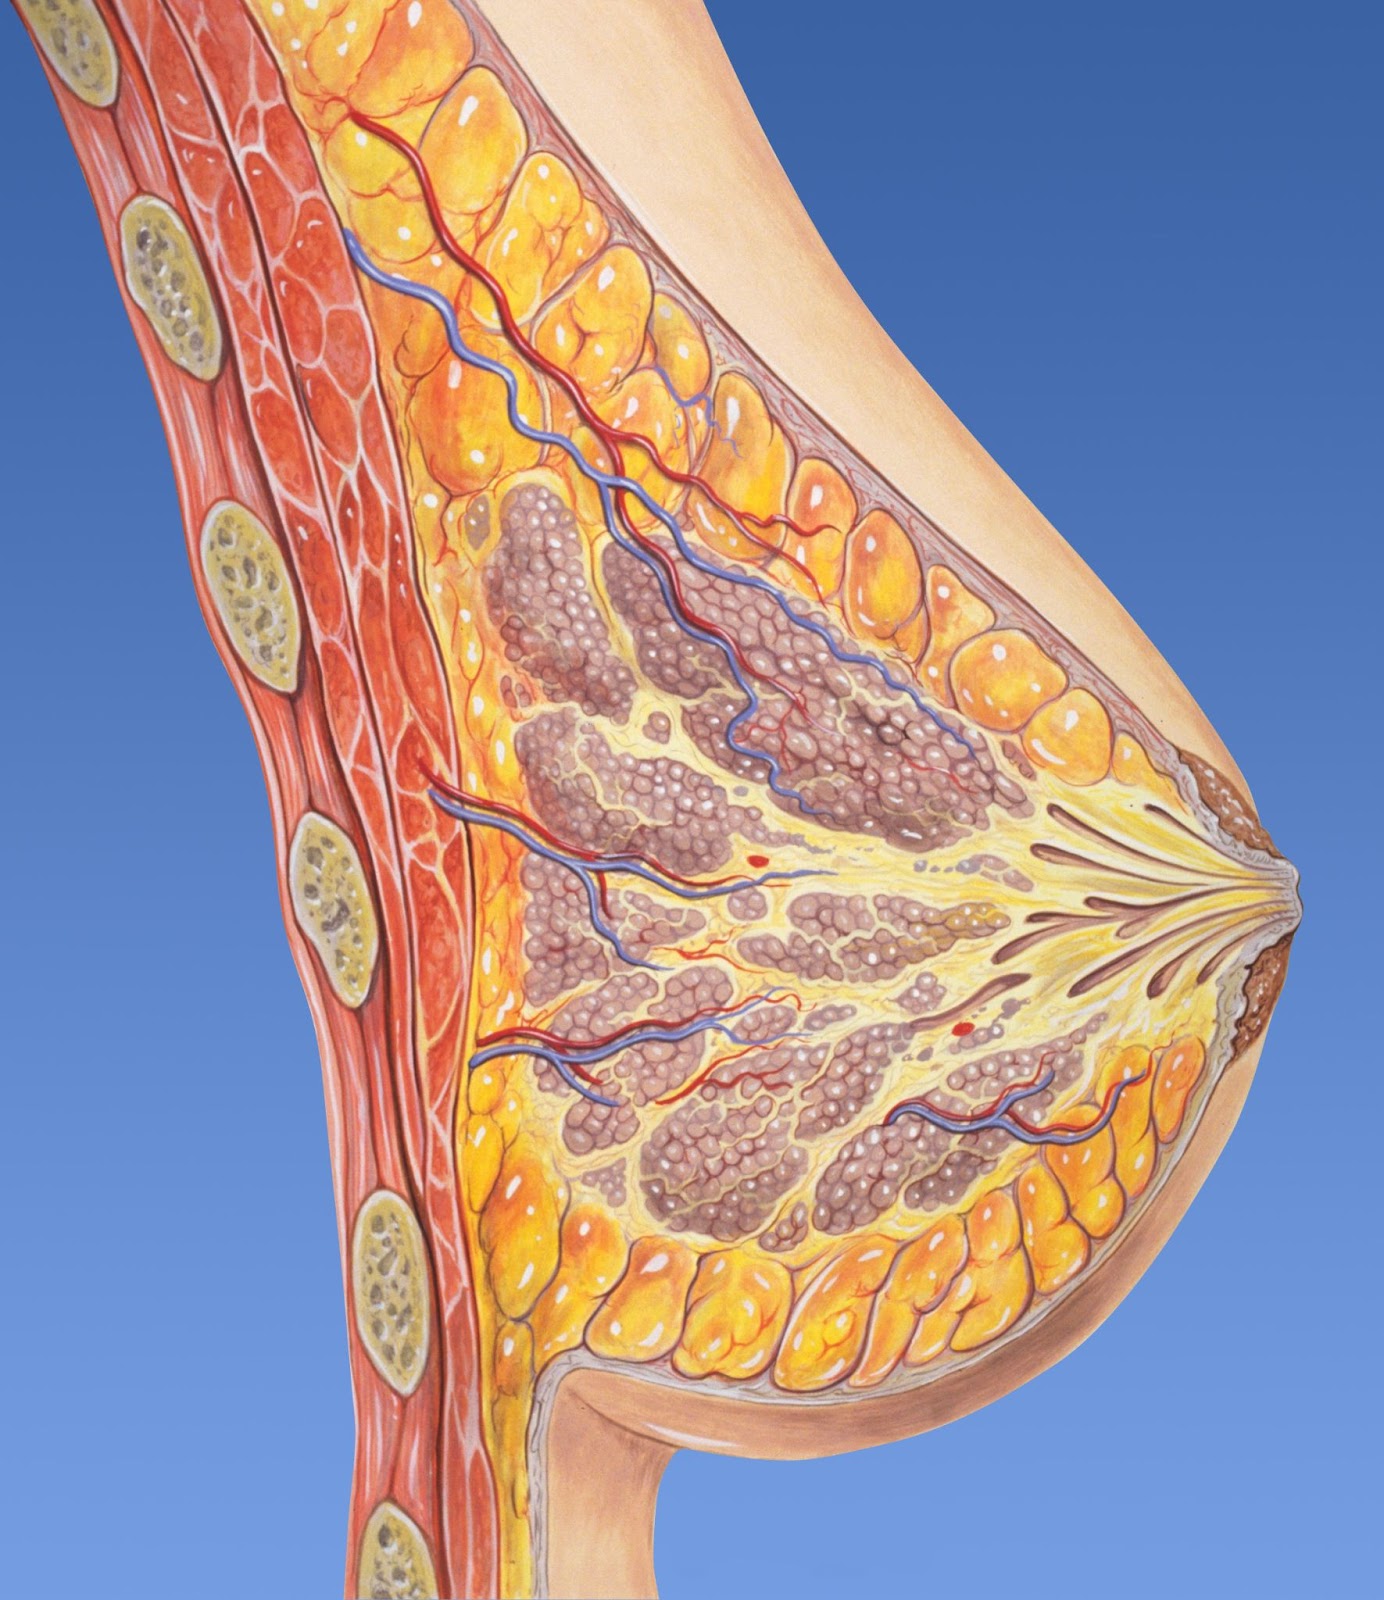 Ilustração de glândulas mamárias em um seio feminino.